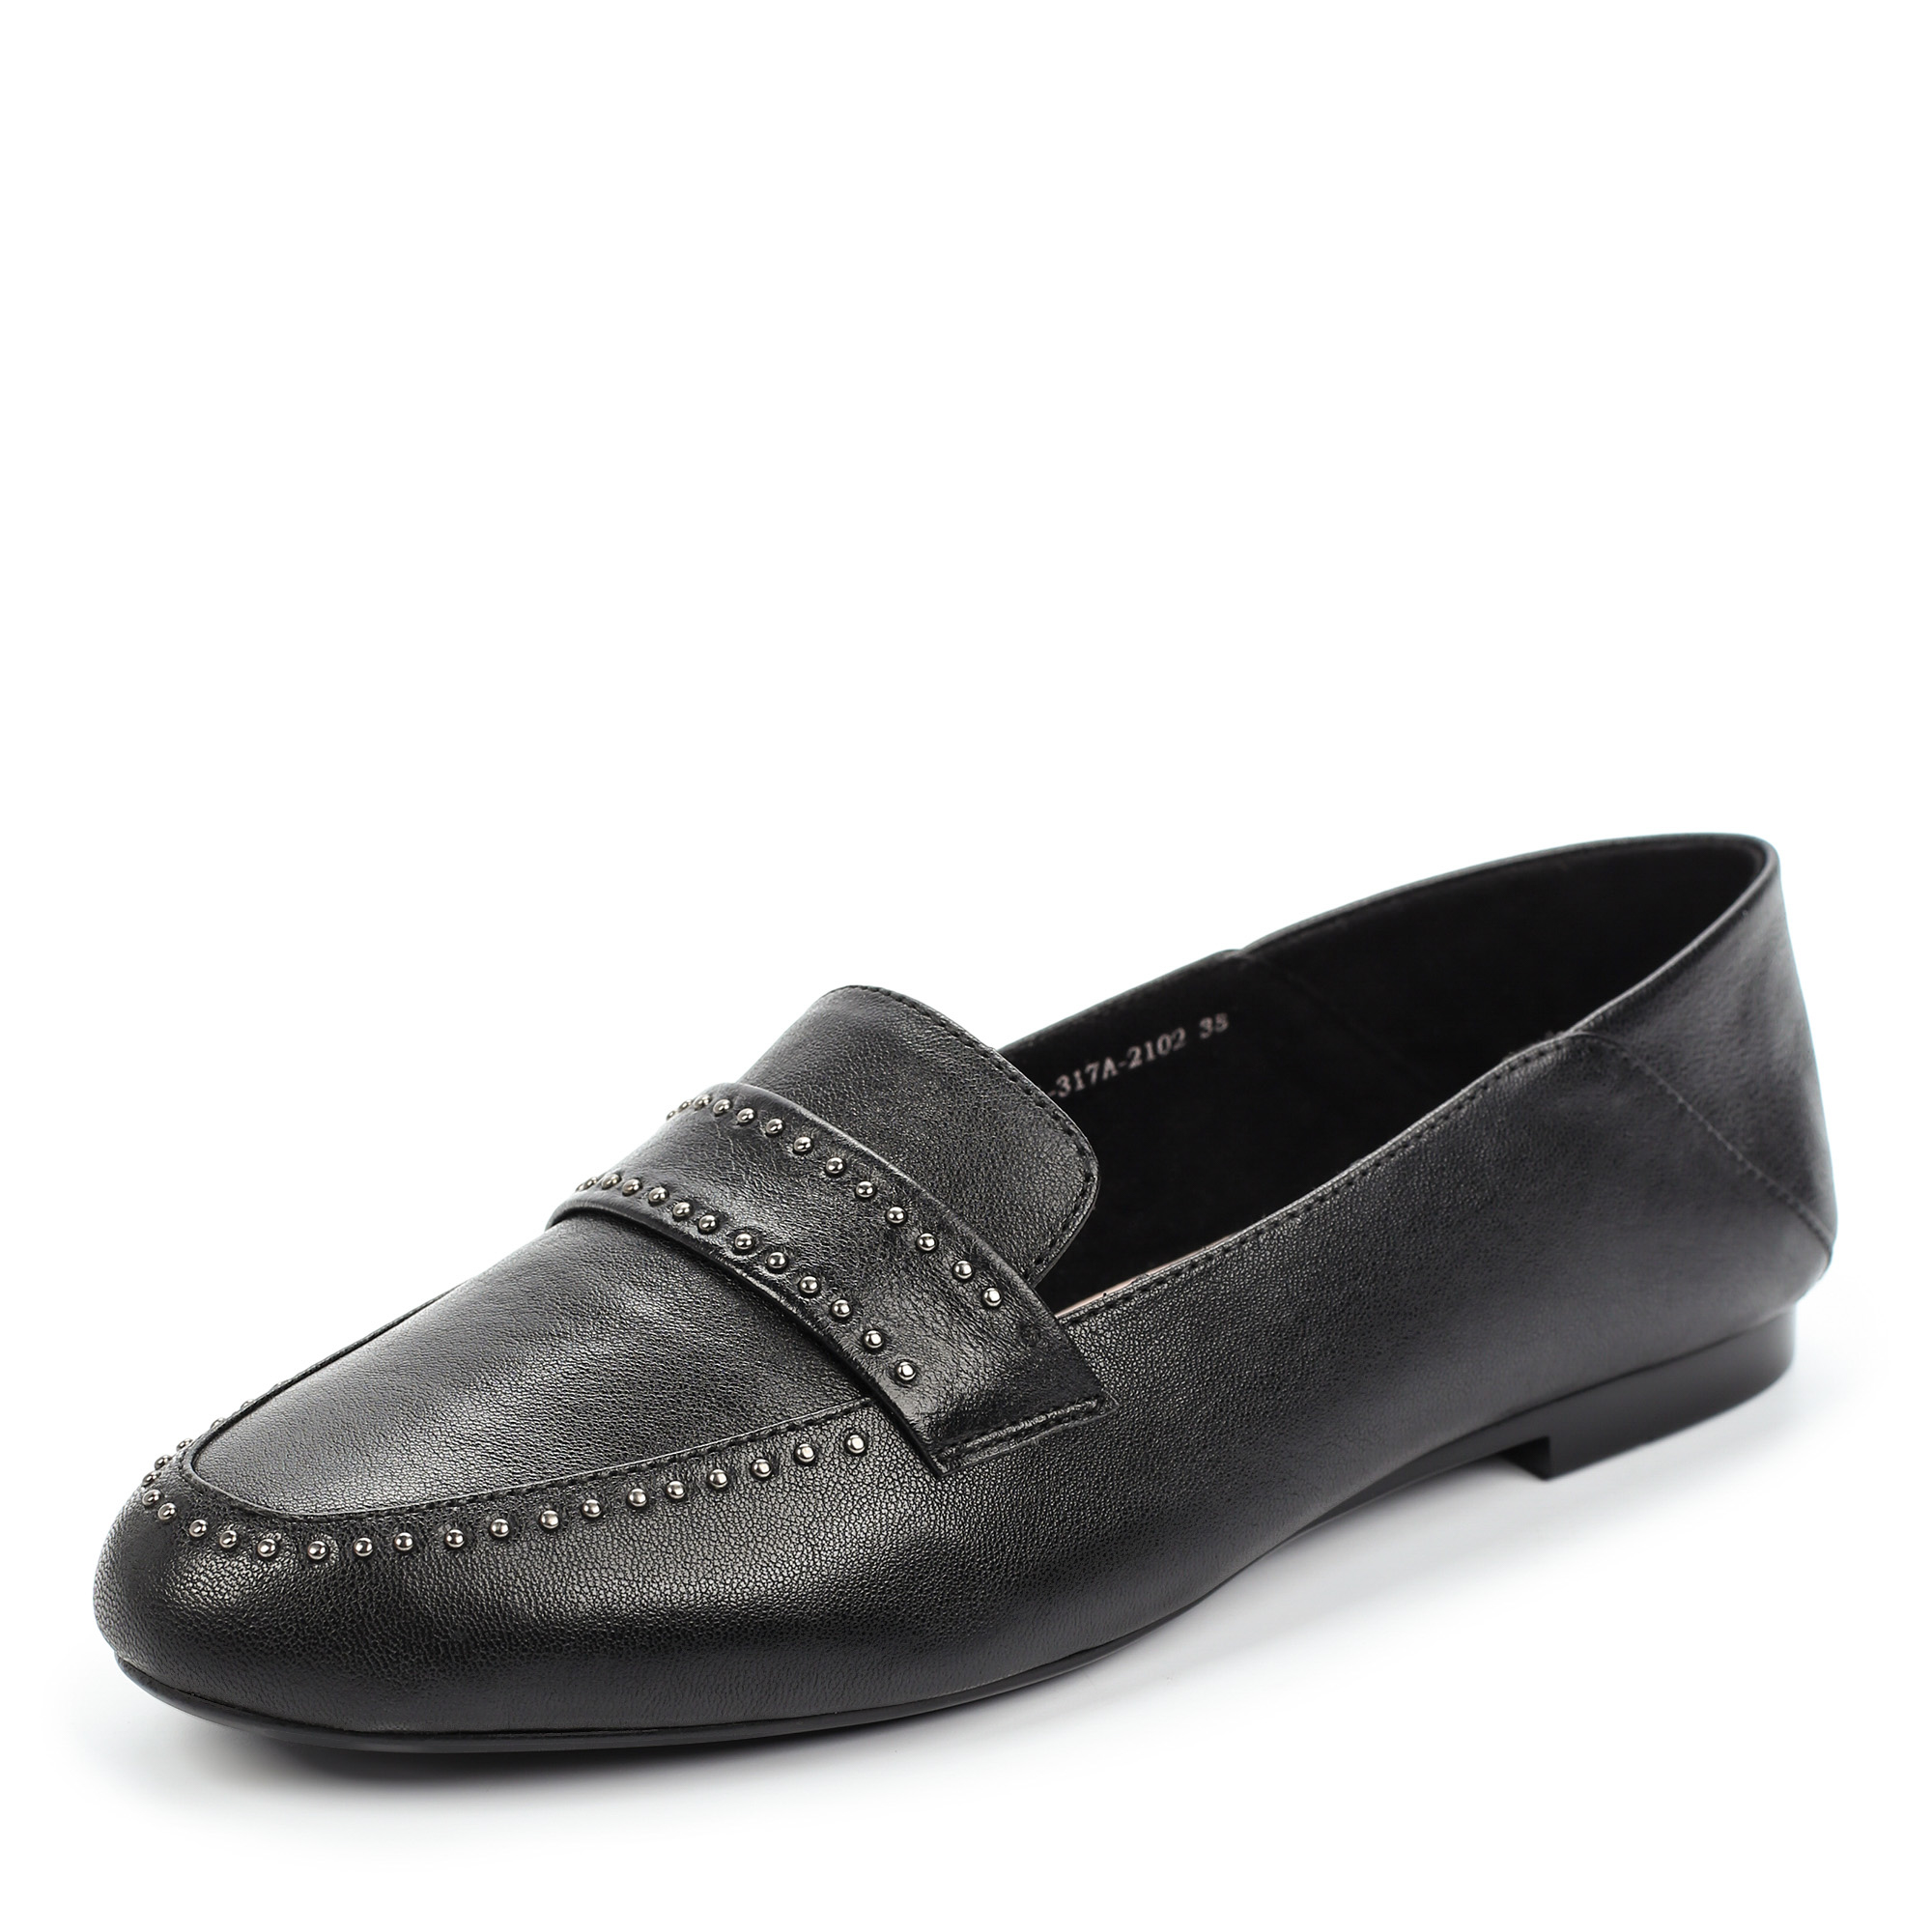 Туфли Thomas Munz 021-317A-2102, цвет черный, размер 37 - фото 2